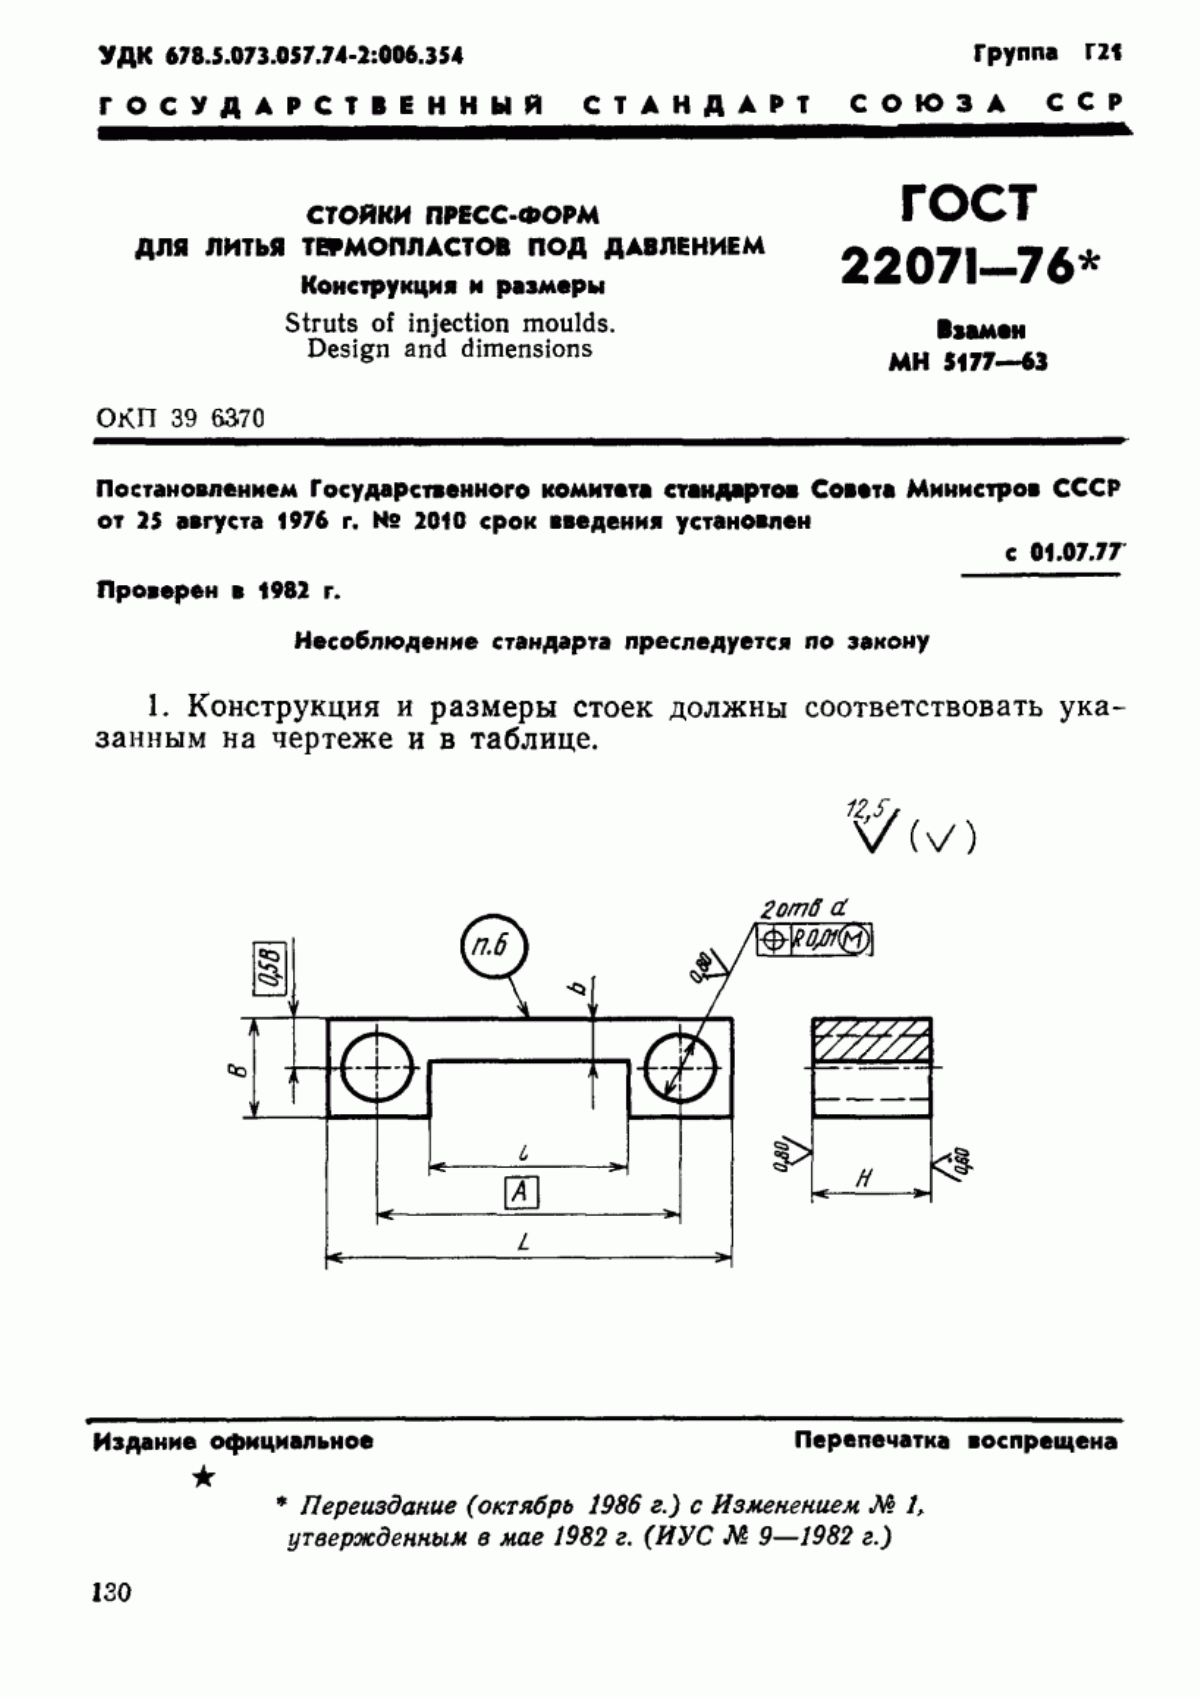 ГОСТ 22071-76 Стойки пресс-форм для литья термопластов под давлением. Конструкция и размеры